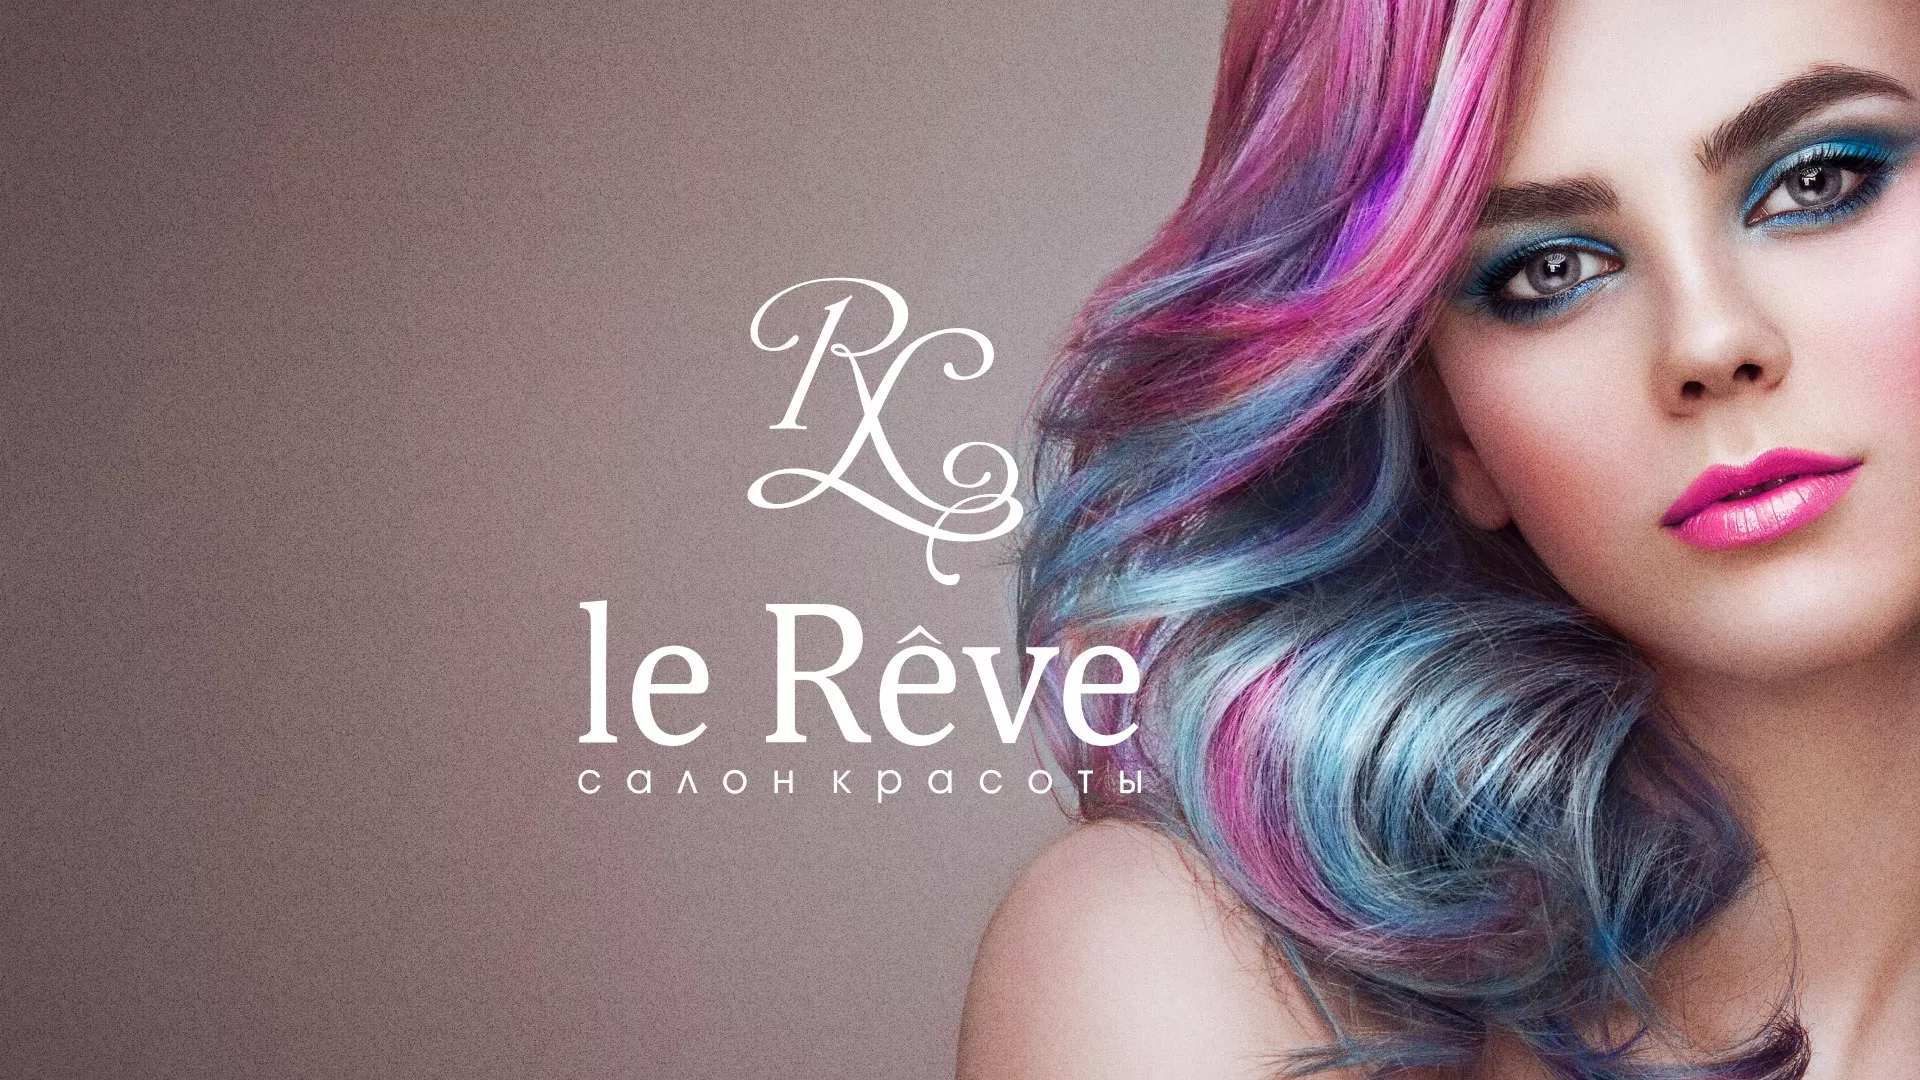 Создание сайта для салона красоты «Le Reve» в Архангельске